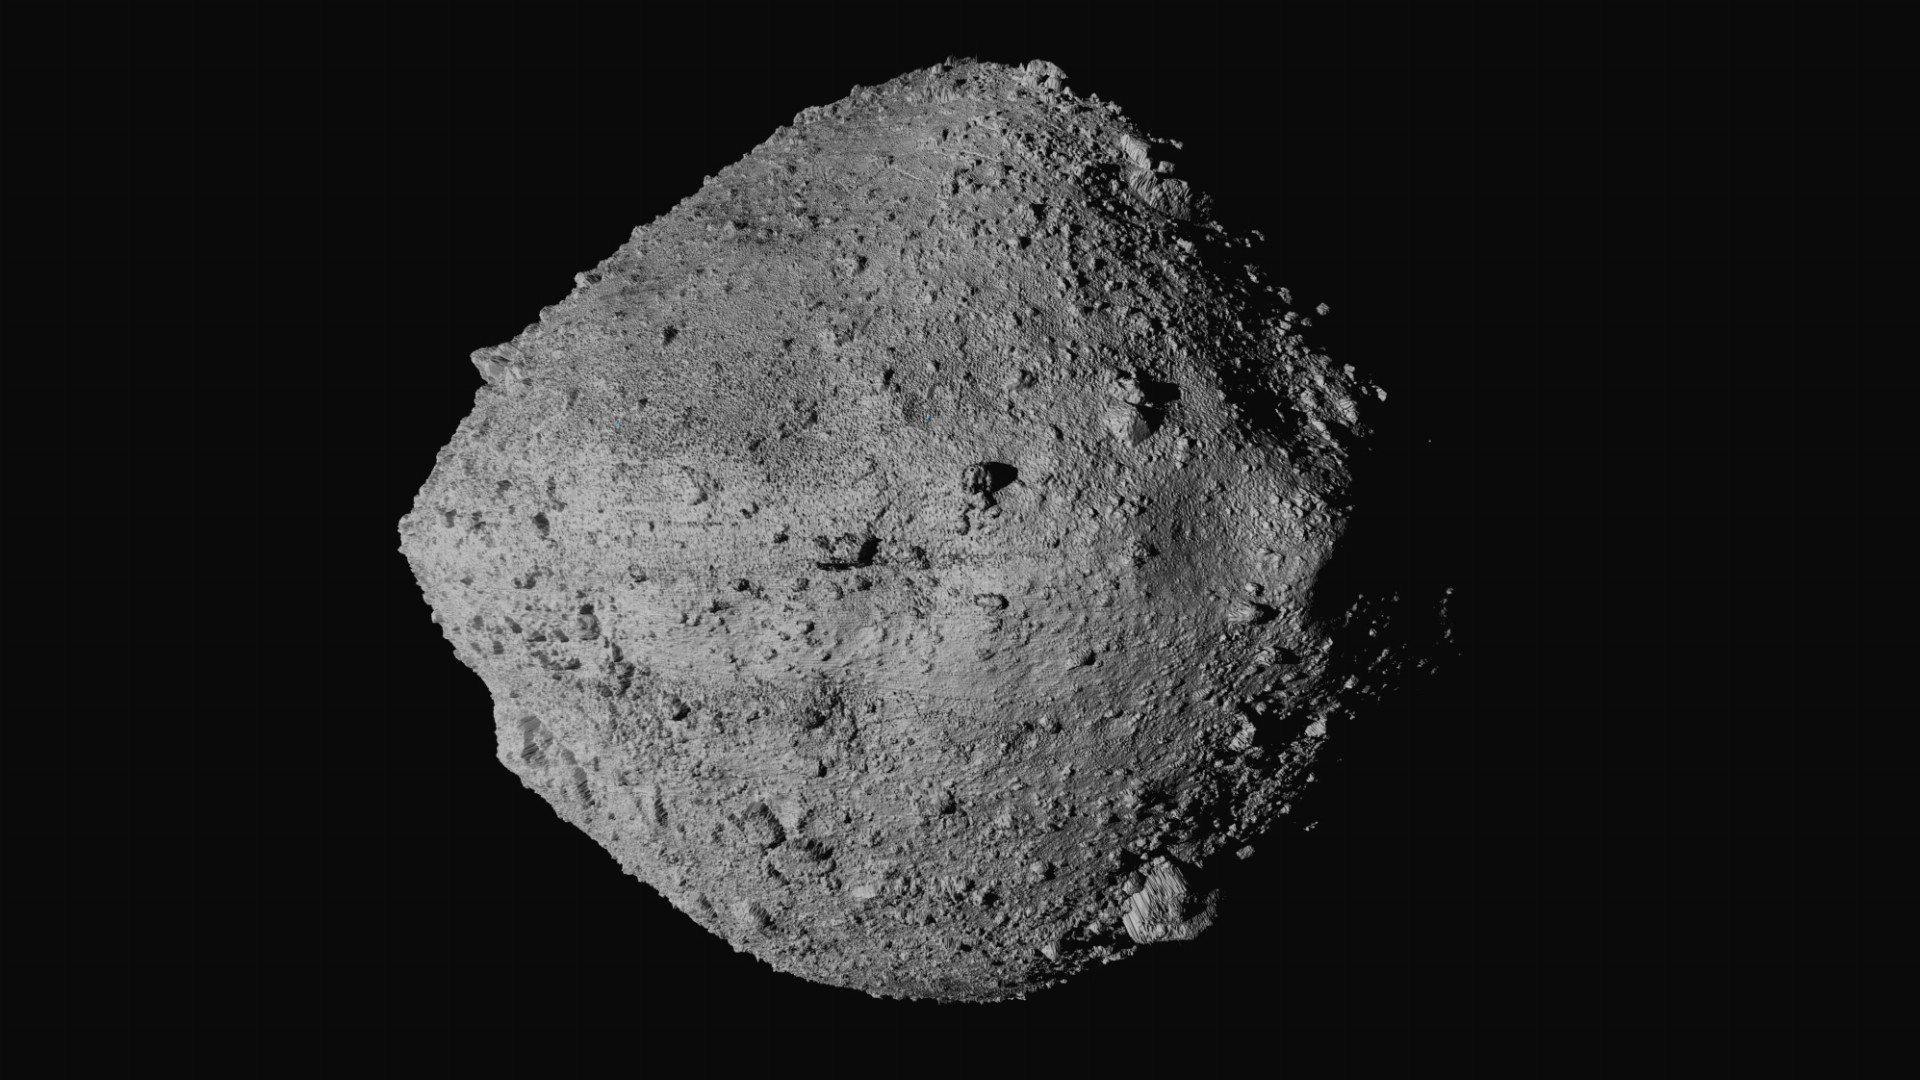 Projekt chce skúmať možnosti ťažby surovín na asteroidoch (ilu)